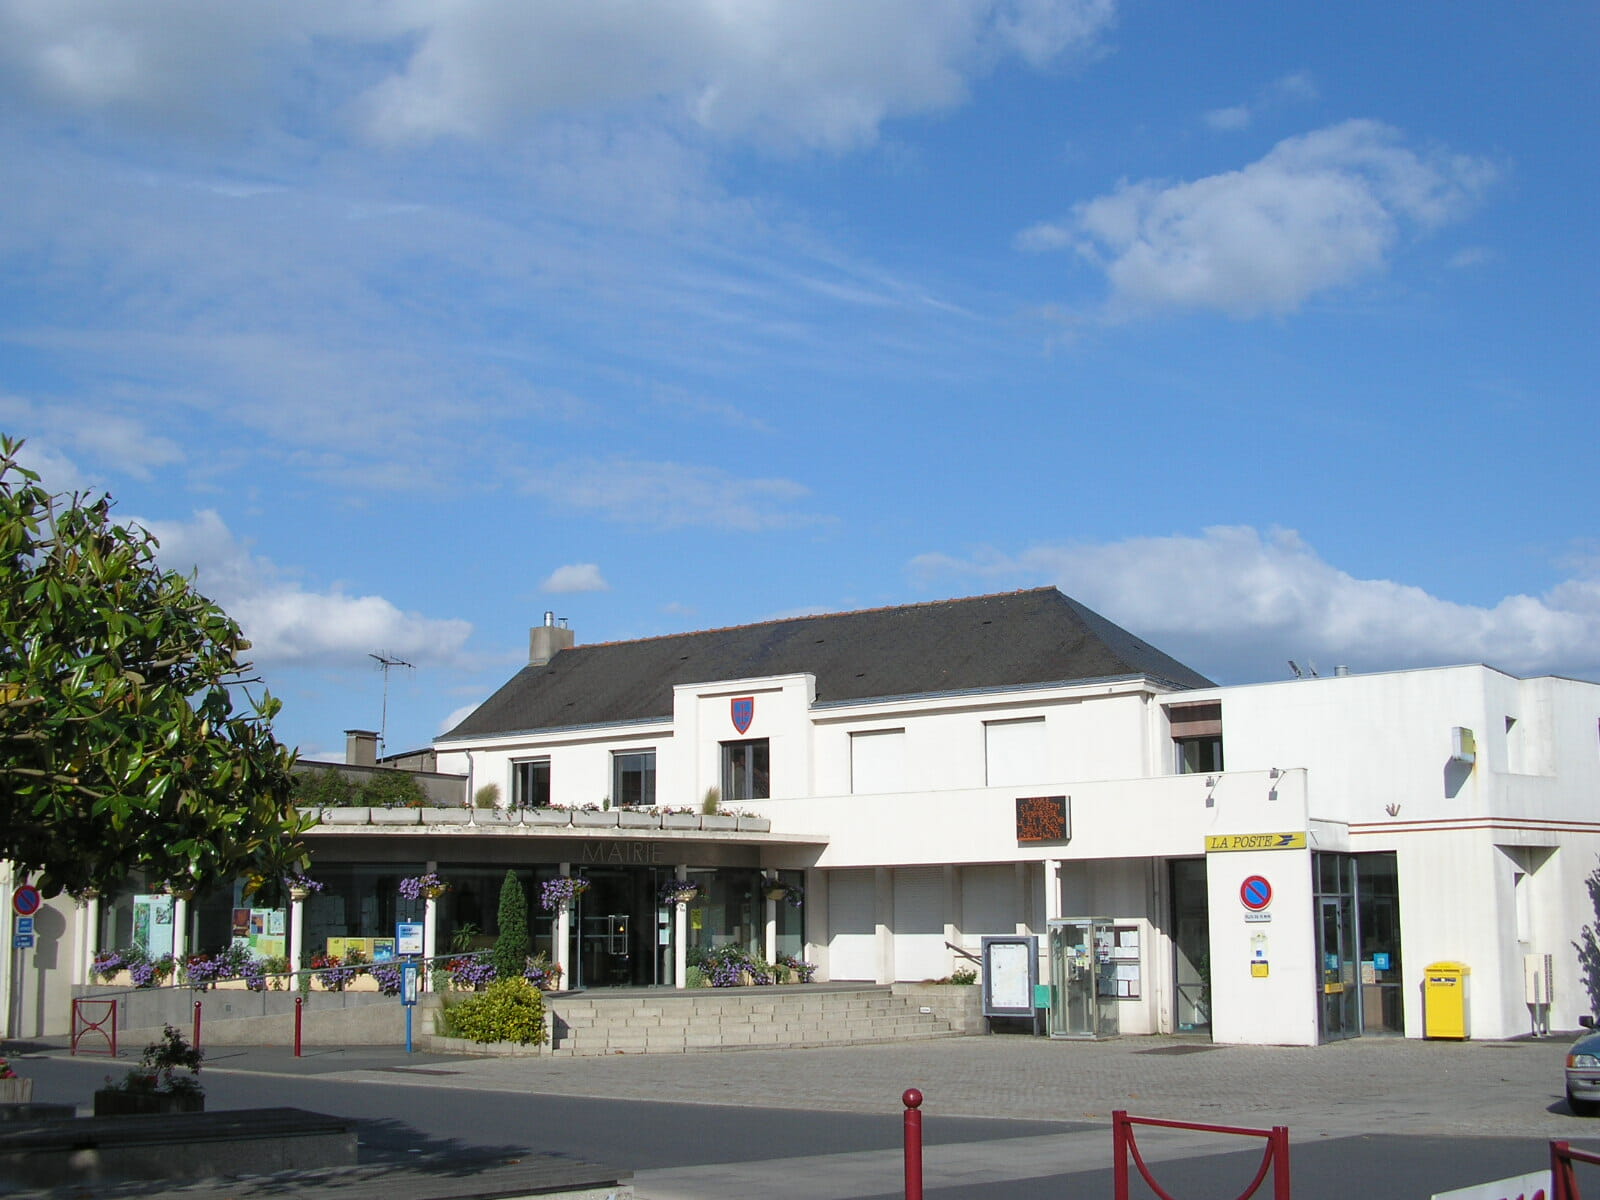 Villedieu-la-Blouère